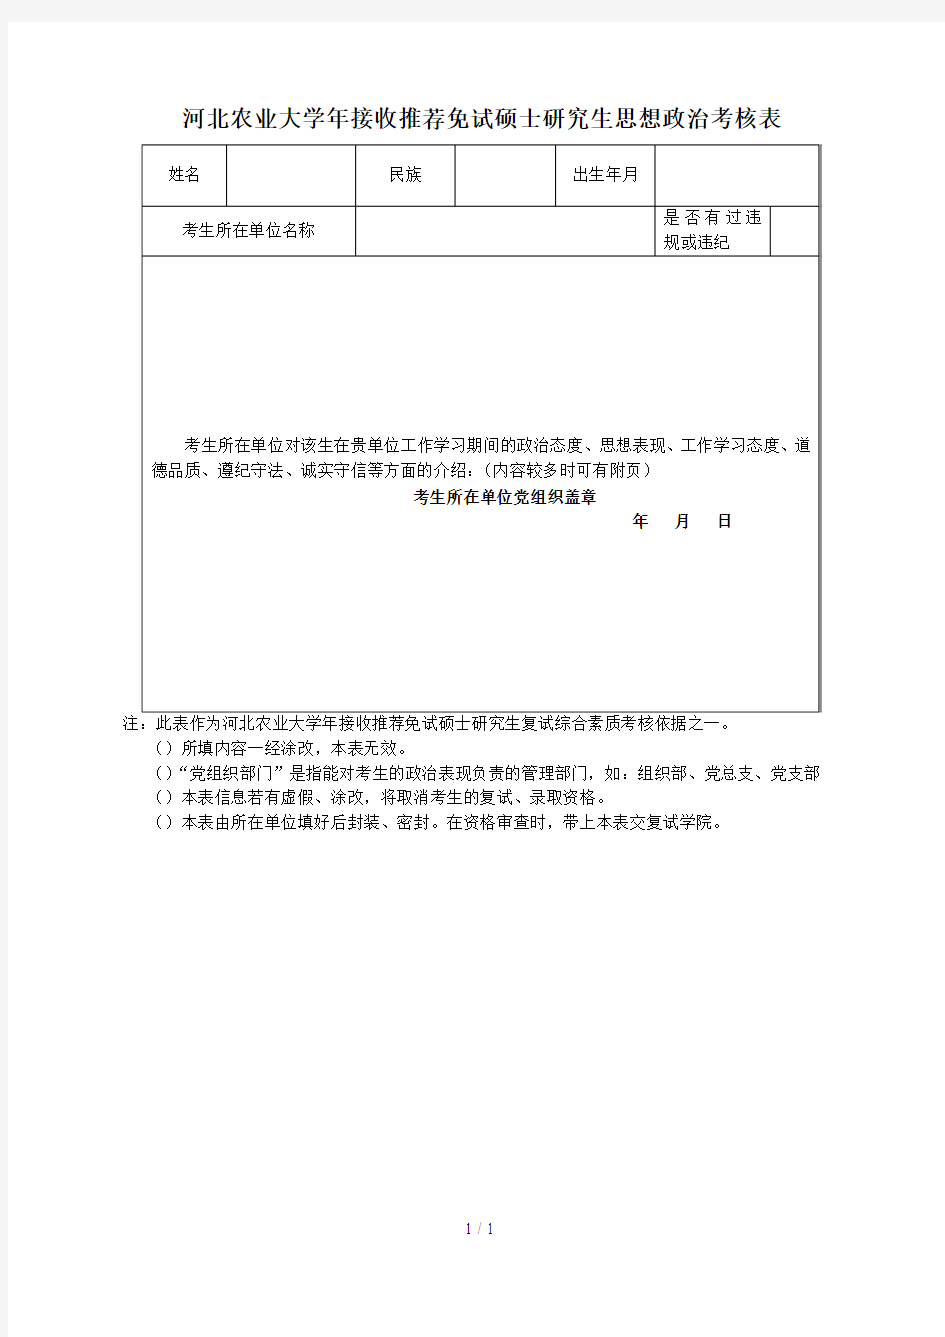 河北农业大学2019年接收推荐免试硕士研究生思想政治考核表